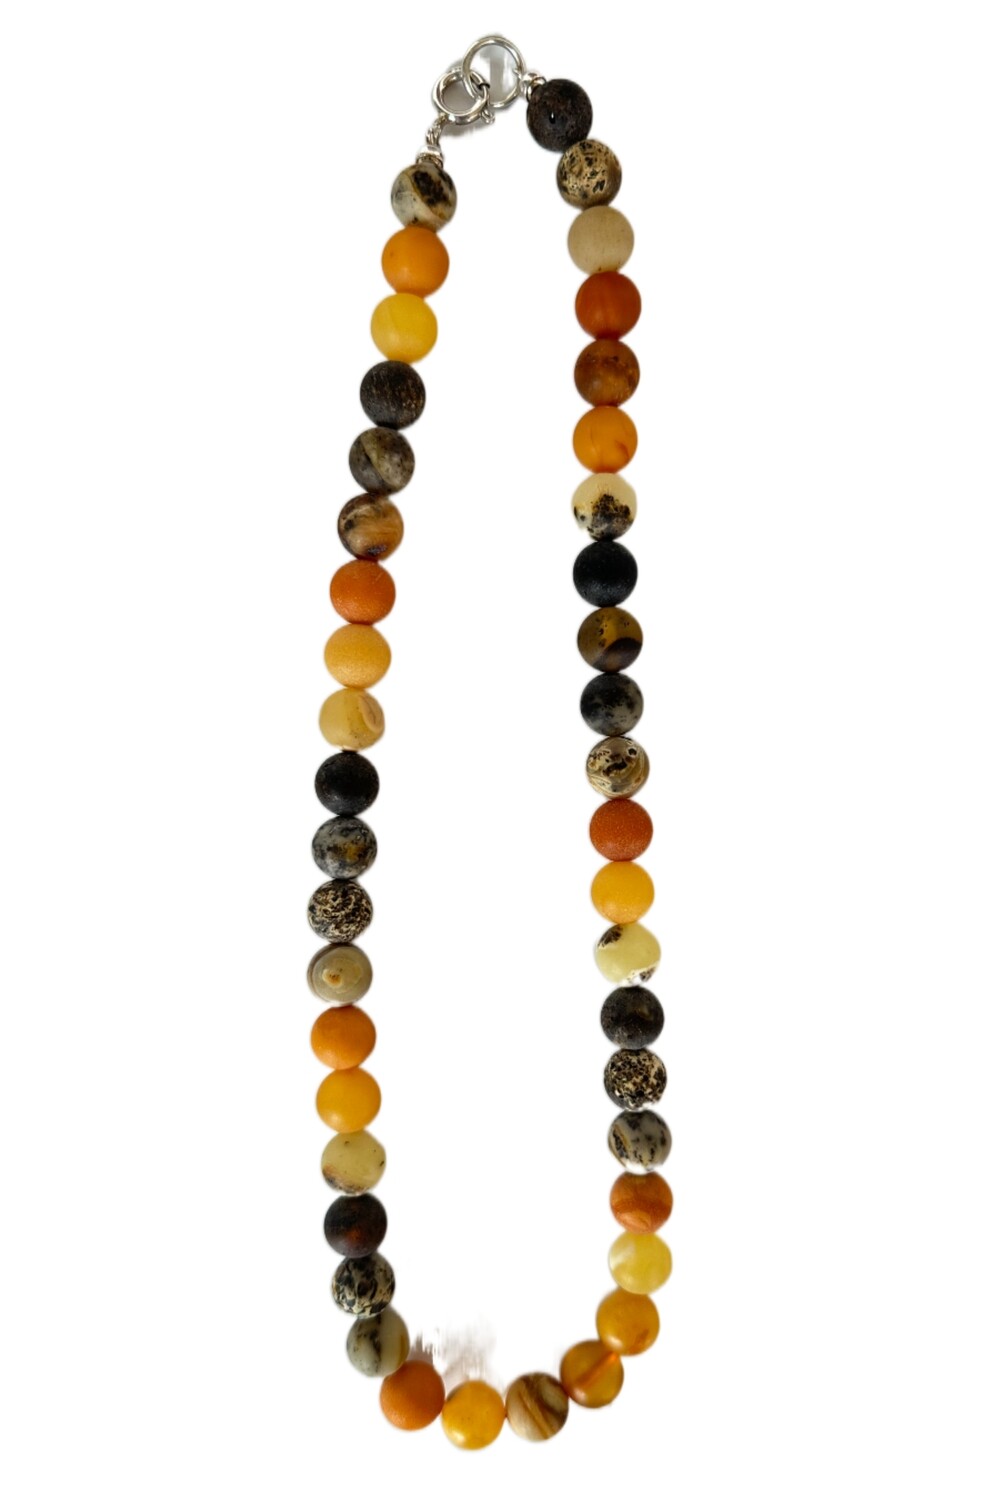 ქარვის ყელსაბამი სხვადასხვა ფერის გაუპრიალებელი მრგვალი ქარვებით